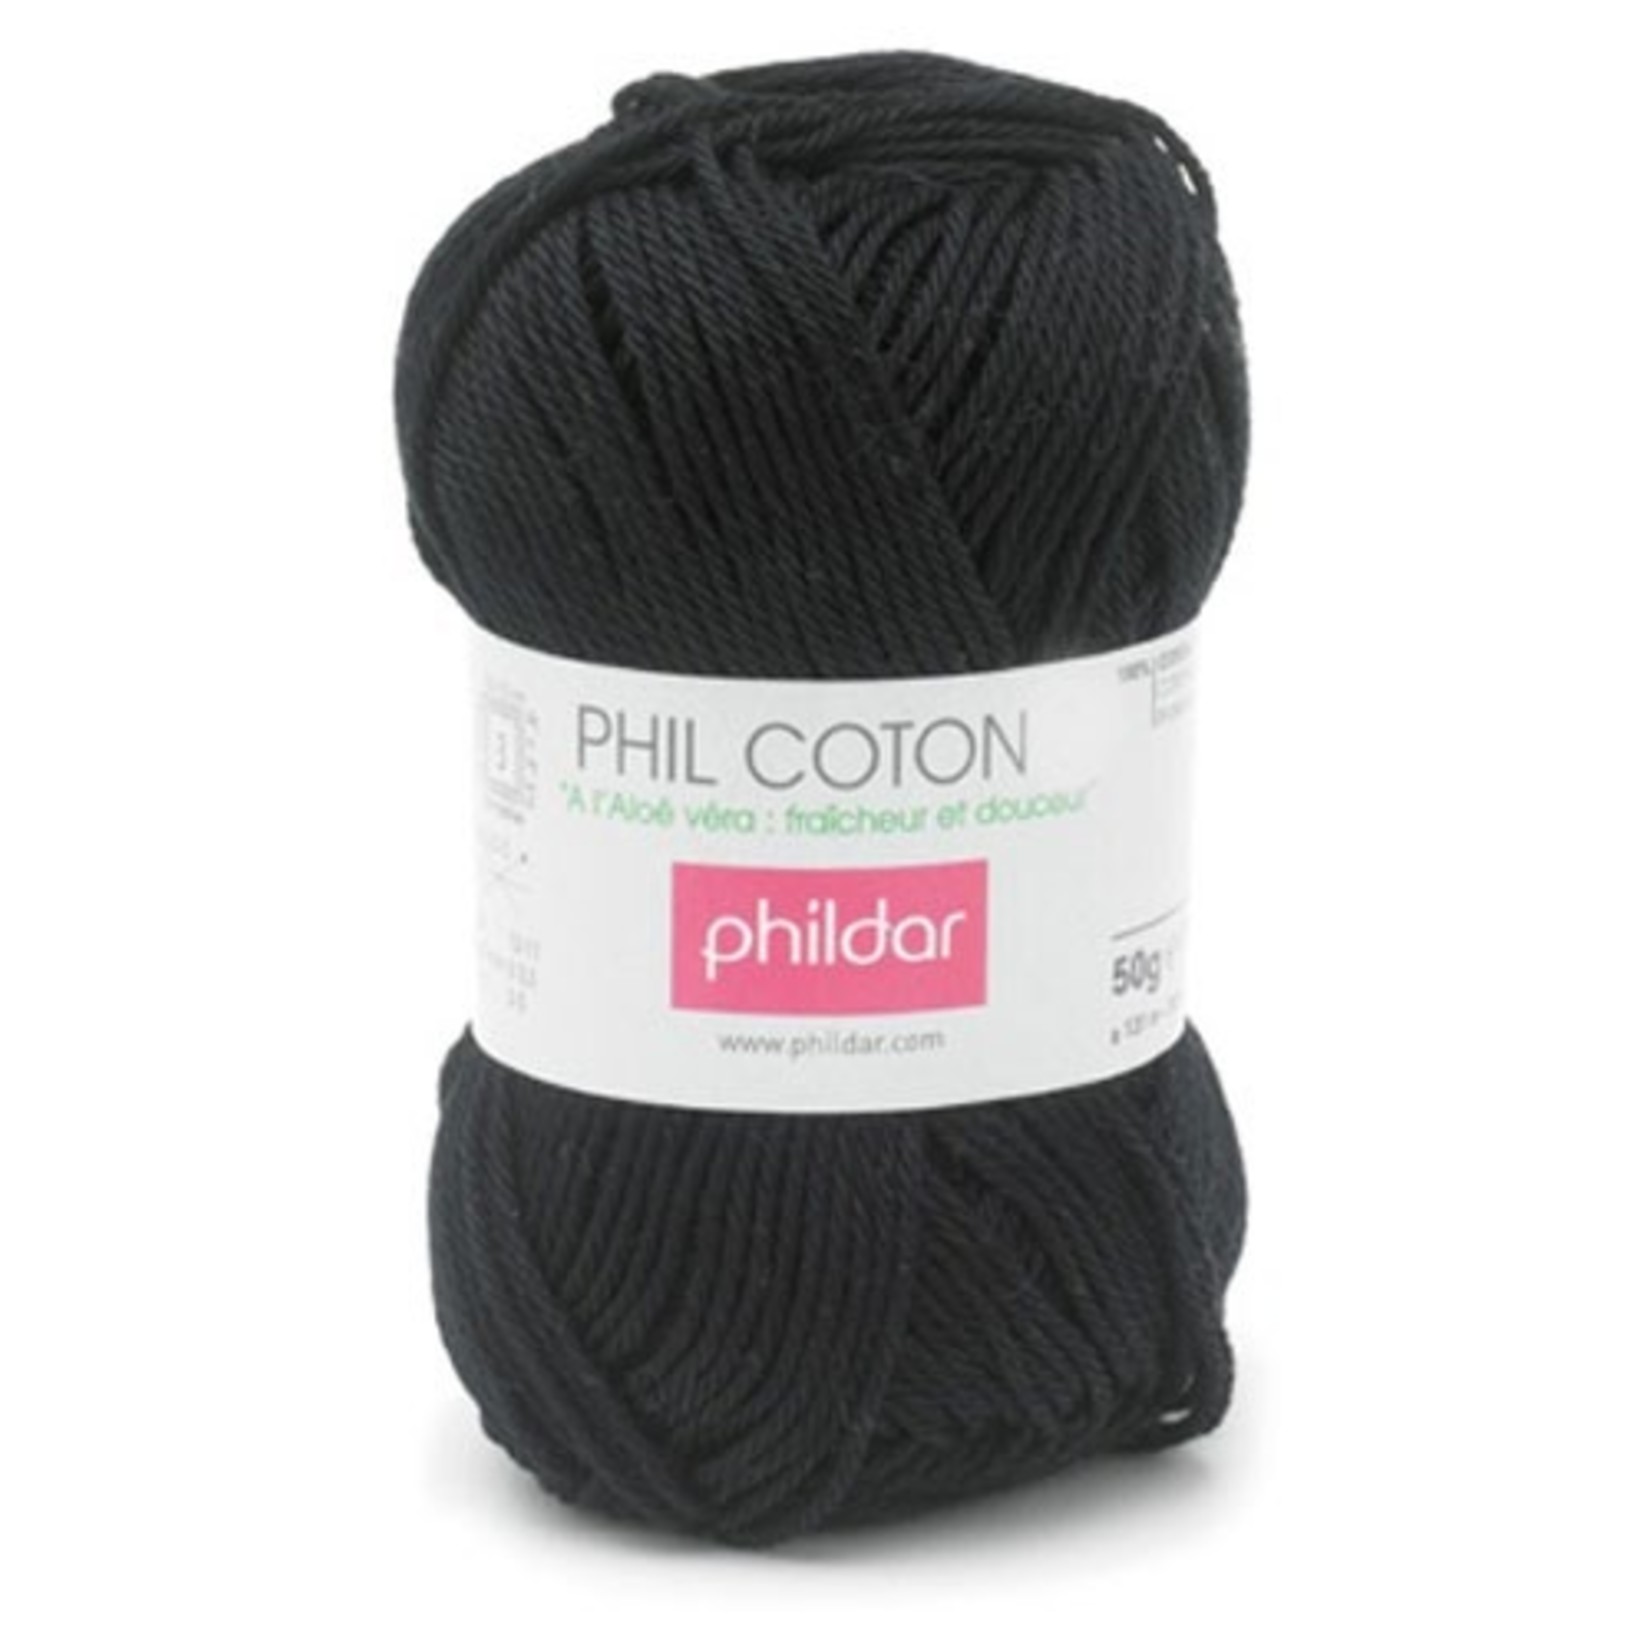 Phildar Phil Coton 4 Noir